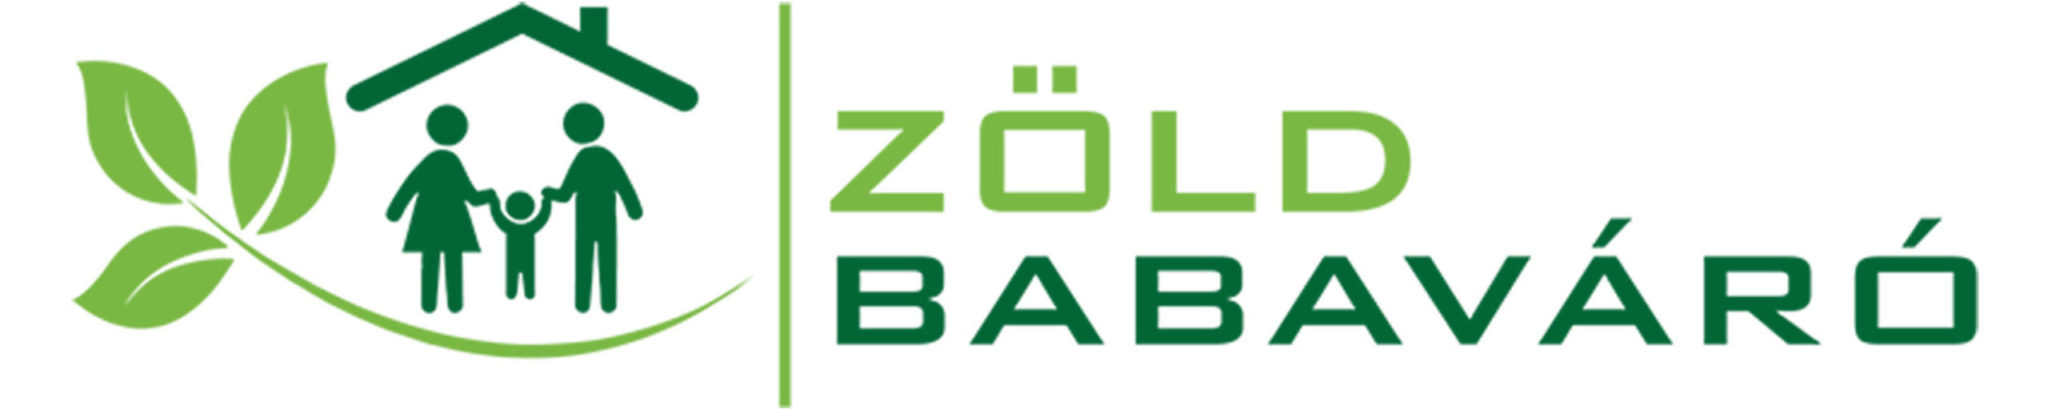 cropped-zoldbabavaro_logo-scaled-1.jpg